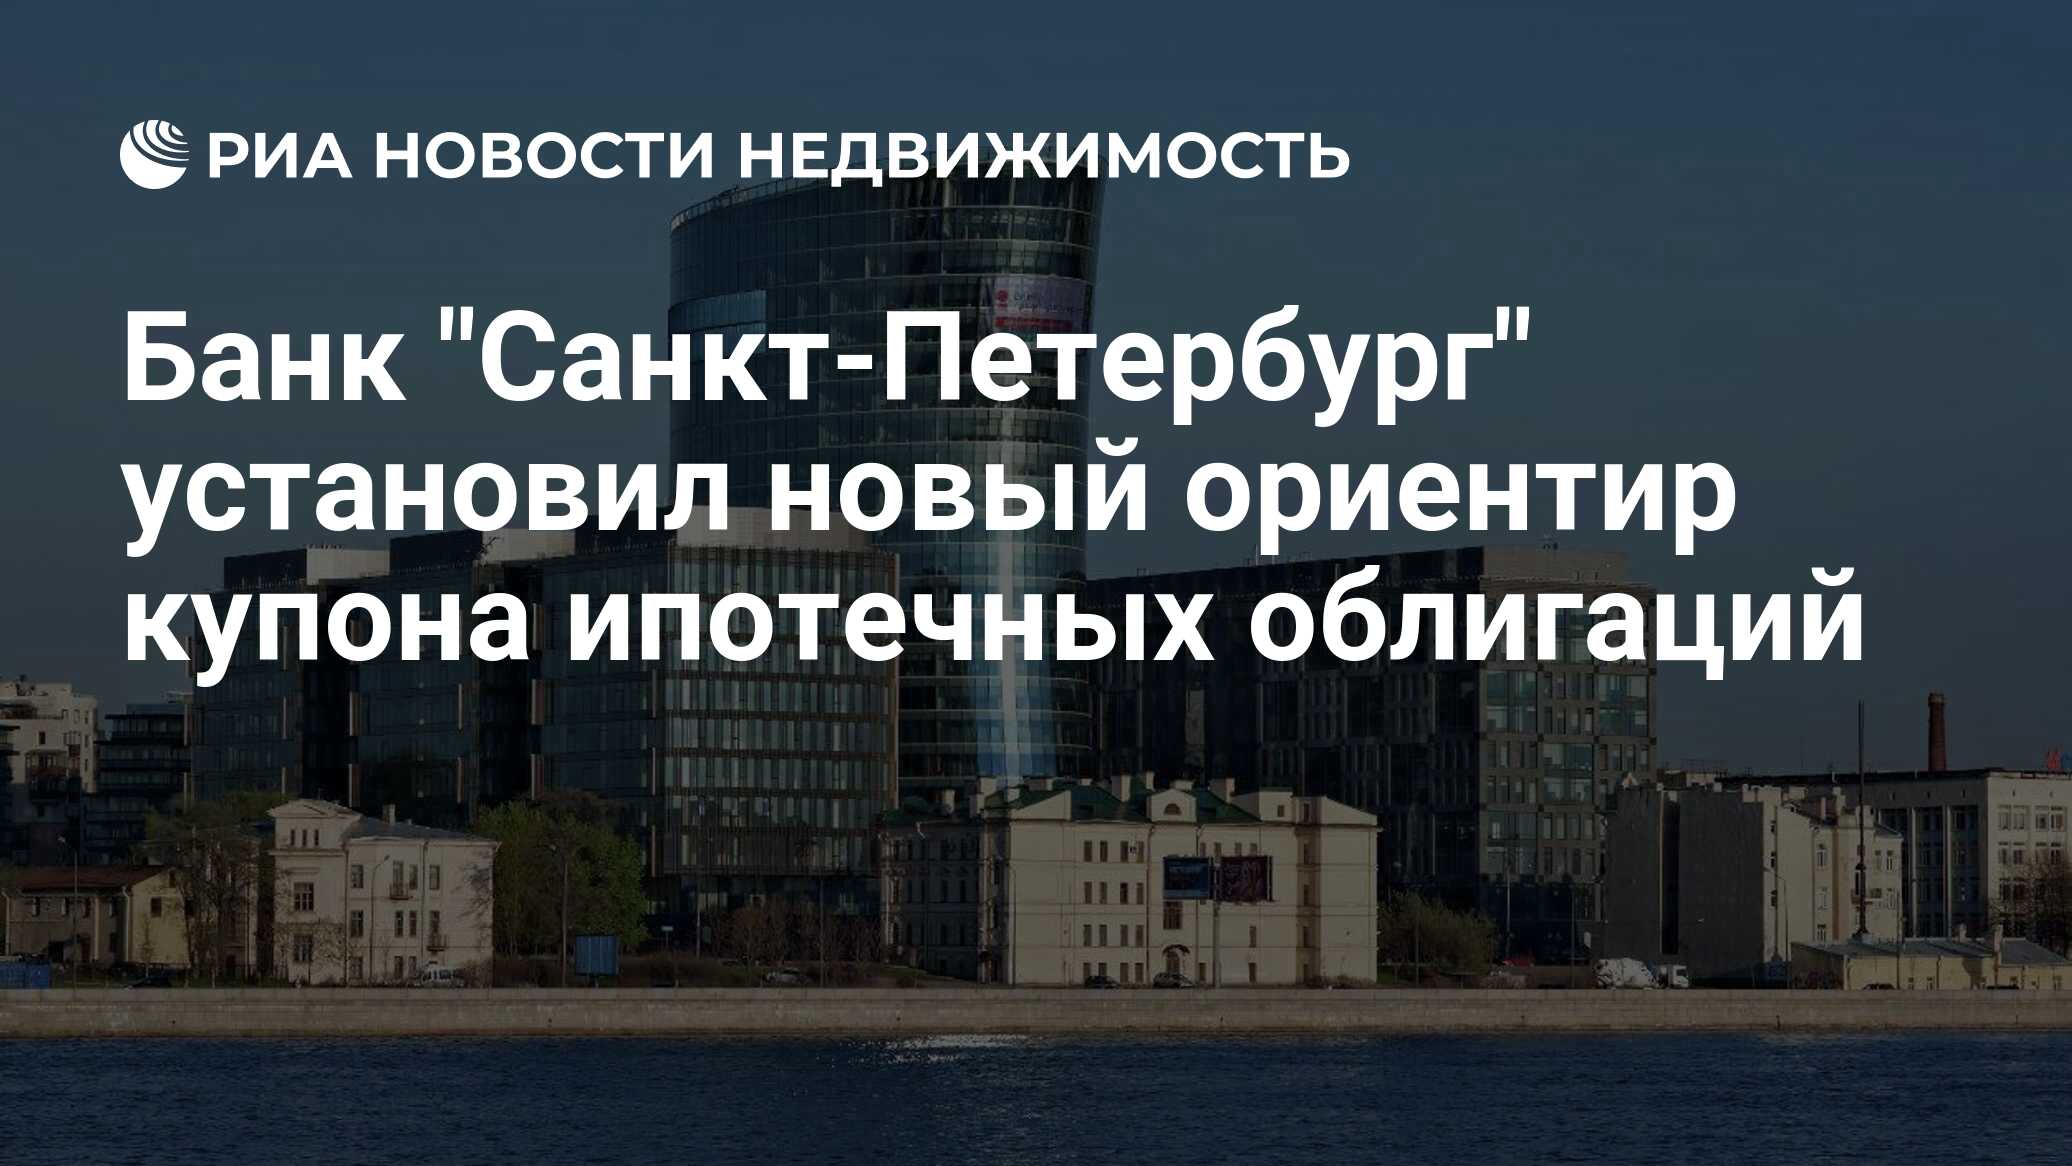 Новый ориентир. Ипотечные банки санкт петербурга